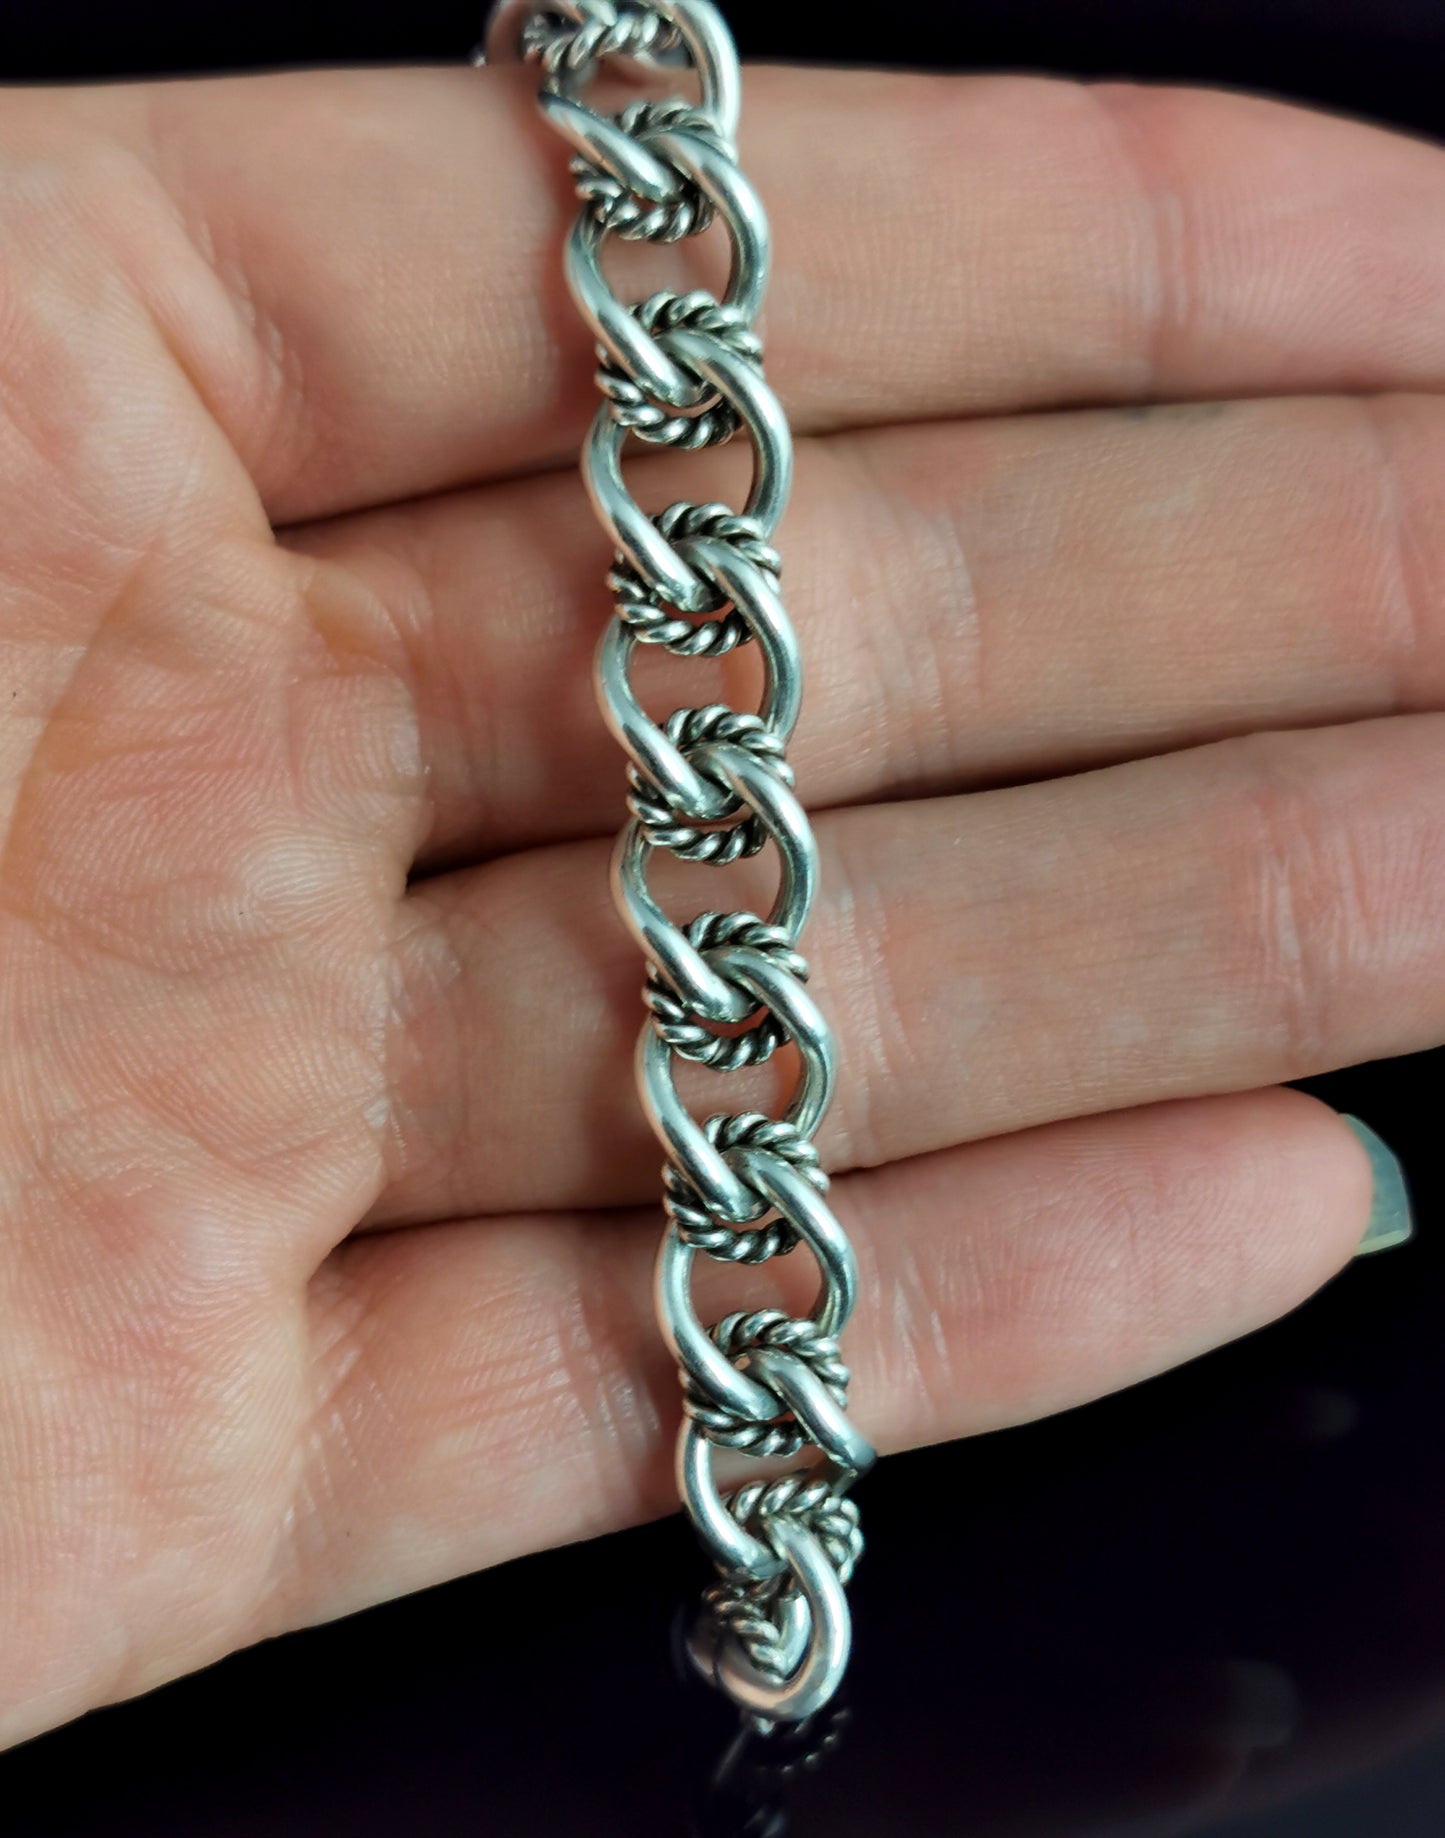 Vintage silver fancy link curb bracelet